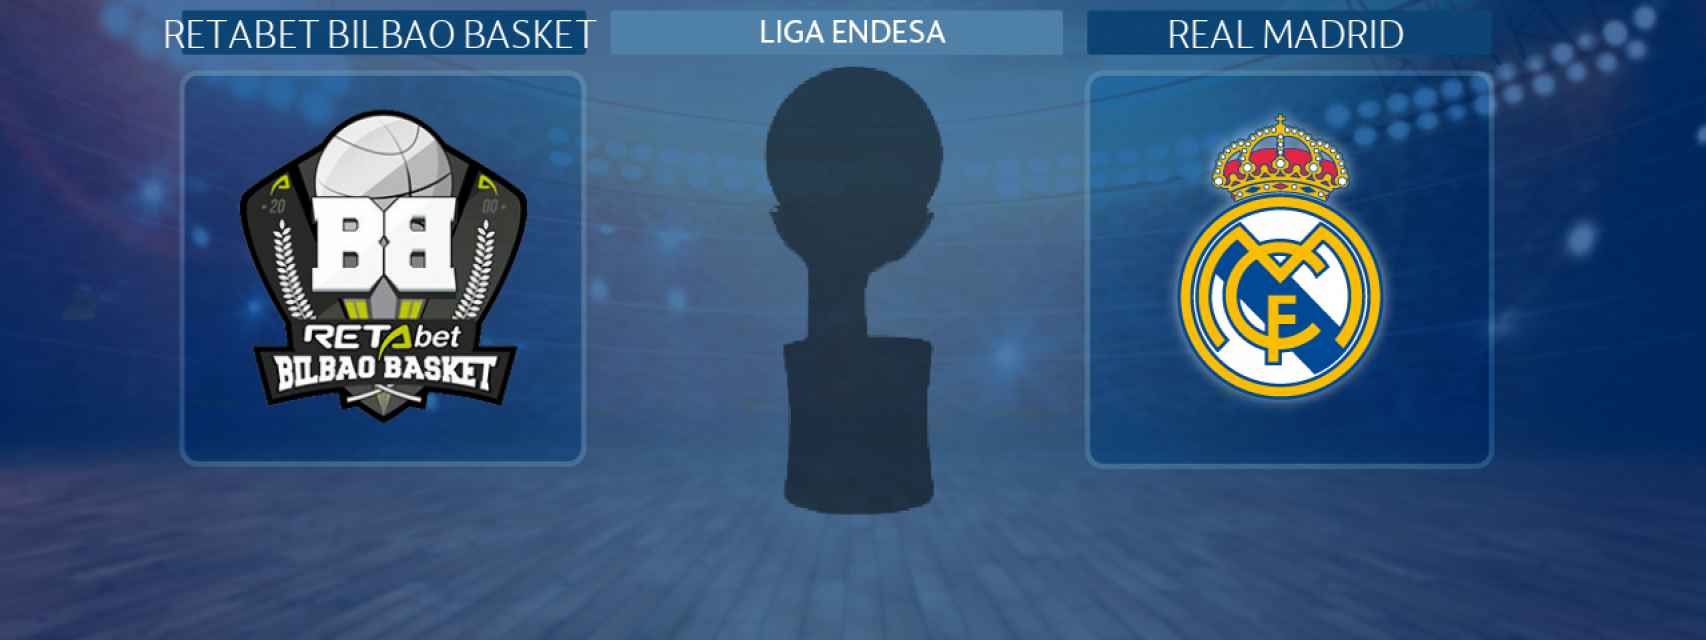 RETAbet Bilbao Basket - Real Madrid, partido de la Liga Endesa